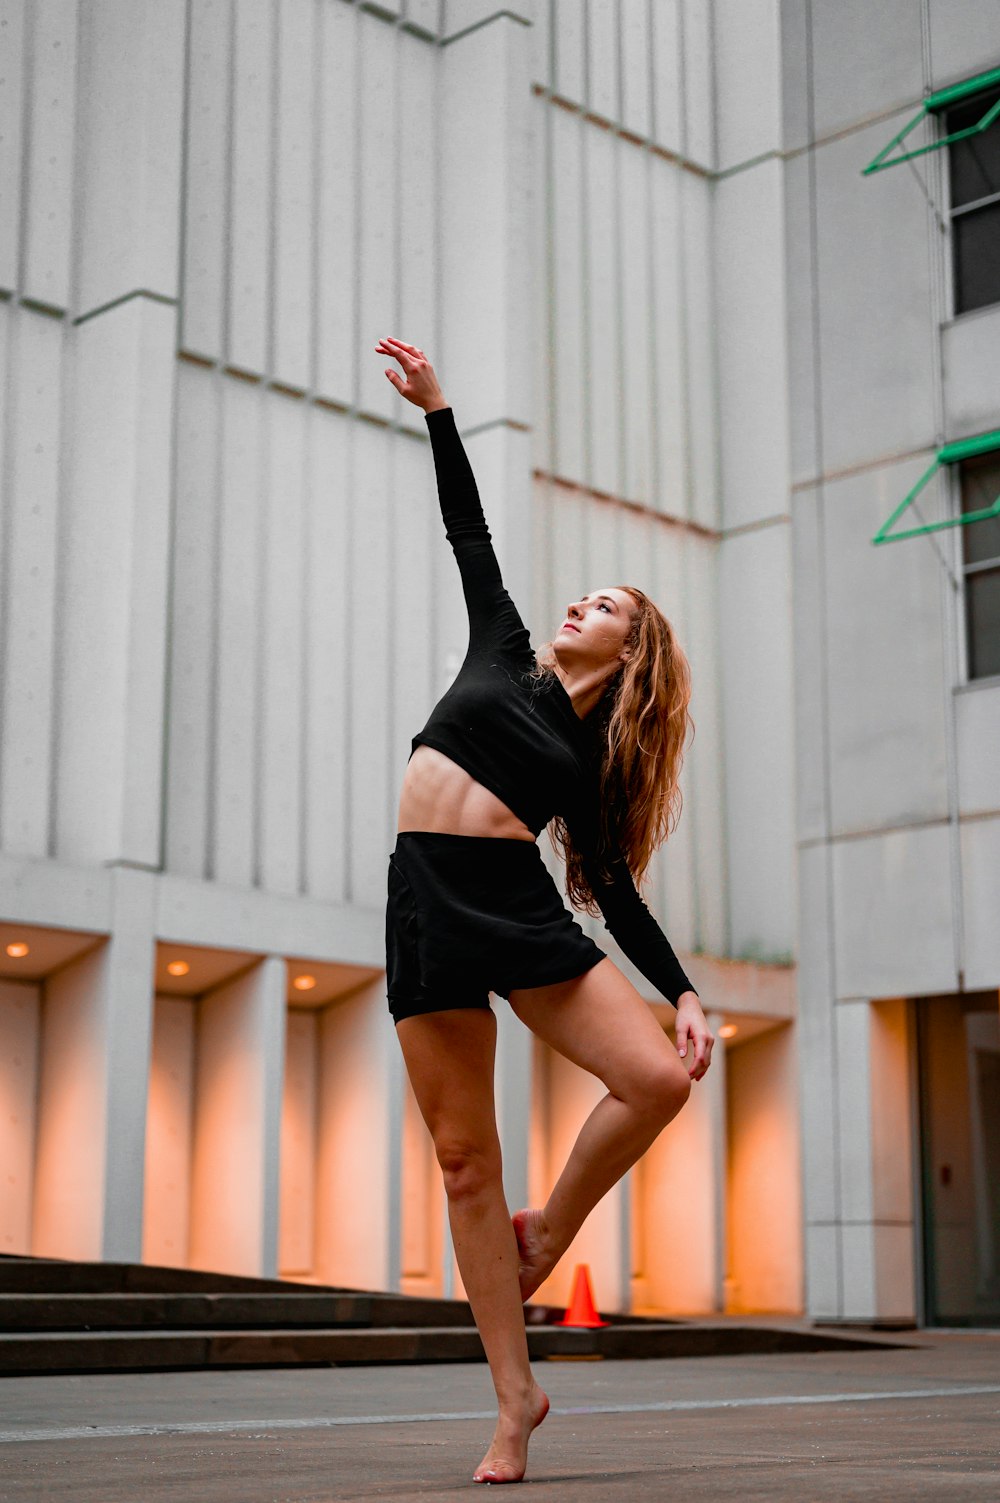 100+ Fotos de Danza Contemporánea  Descargar imágenes gratis en Unsplash